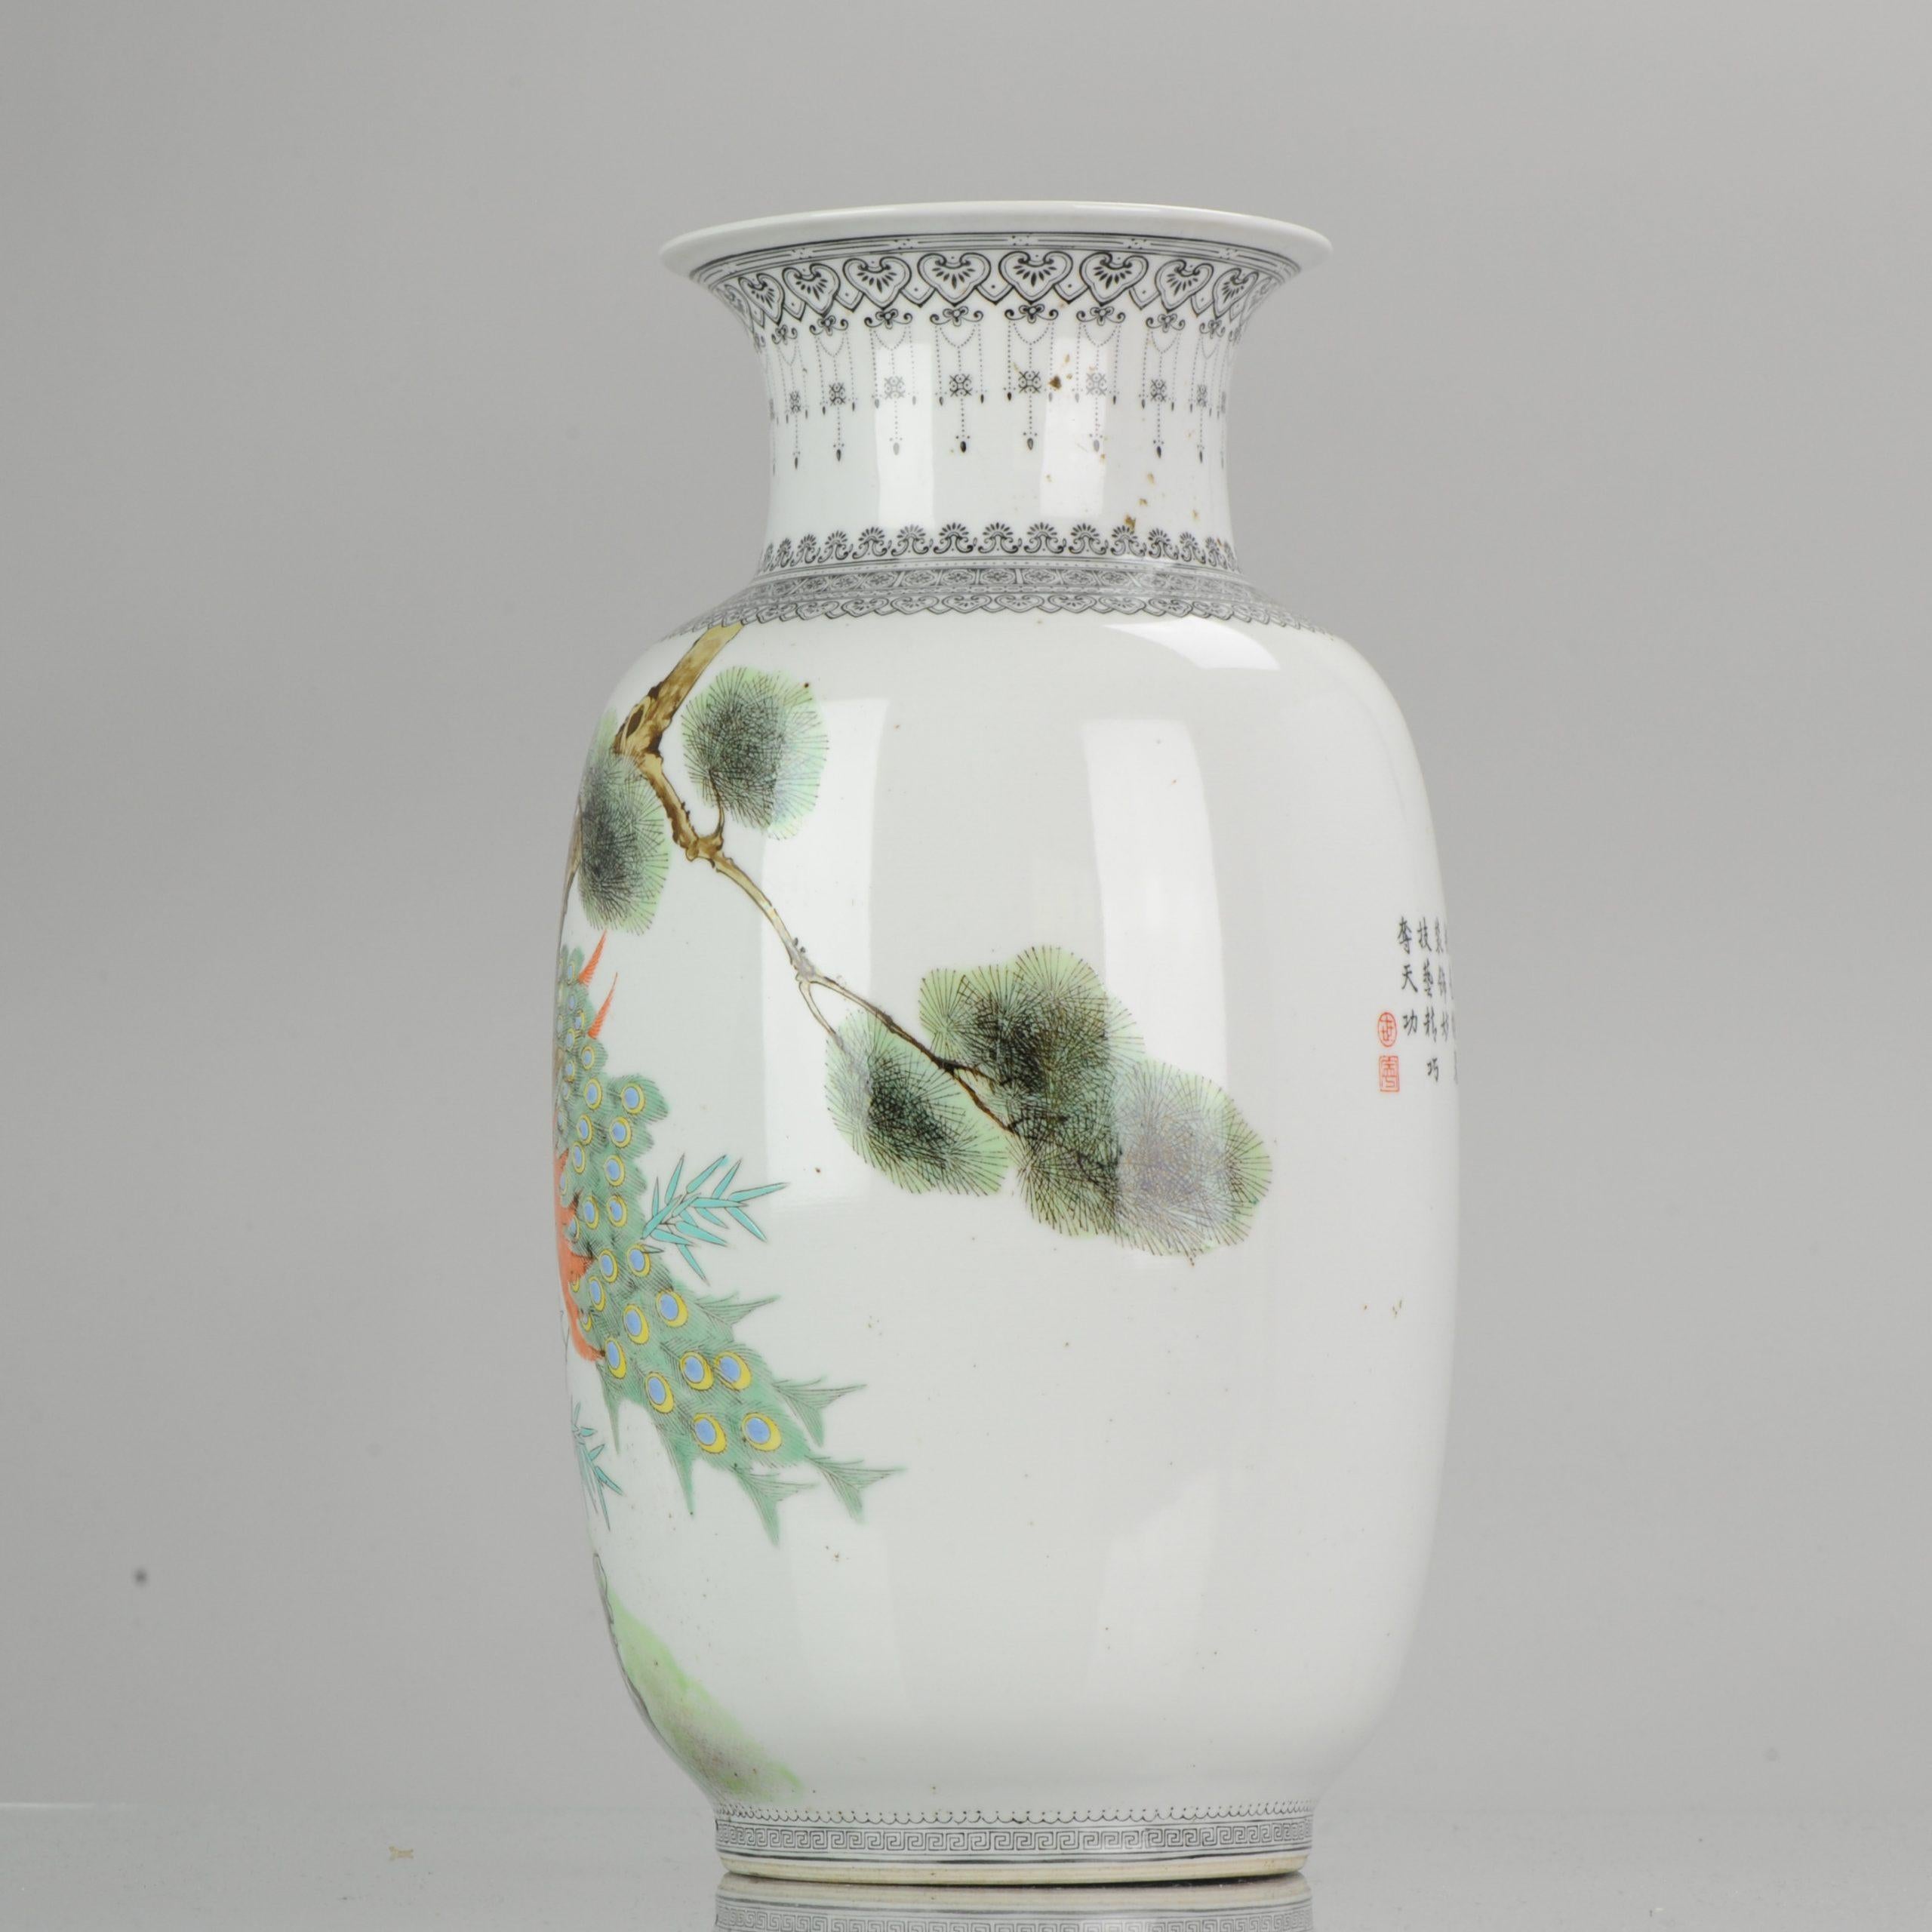 Une paire de vases en porcelaine chinoise, période PROC, peints en famille rose.

 
Condition
Condition générale parfaite. Taille : 235mm
Période
pRoC du 20ème siècle (1949 - maintenant).